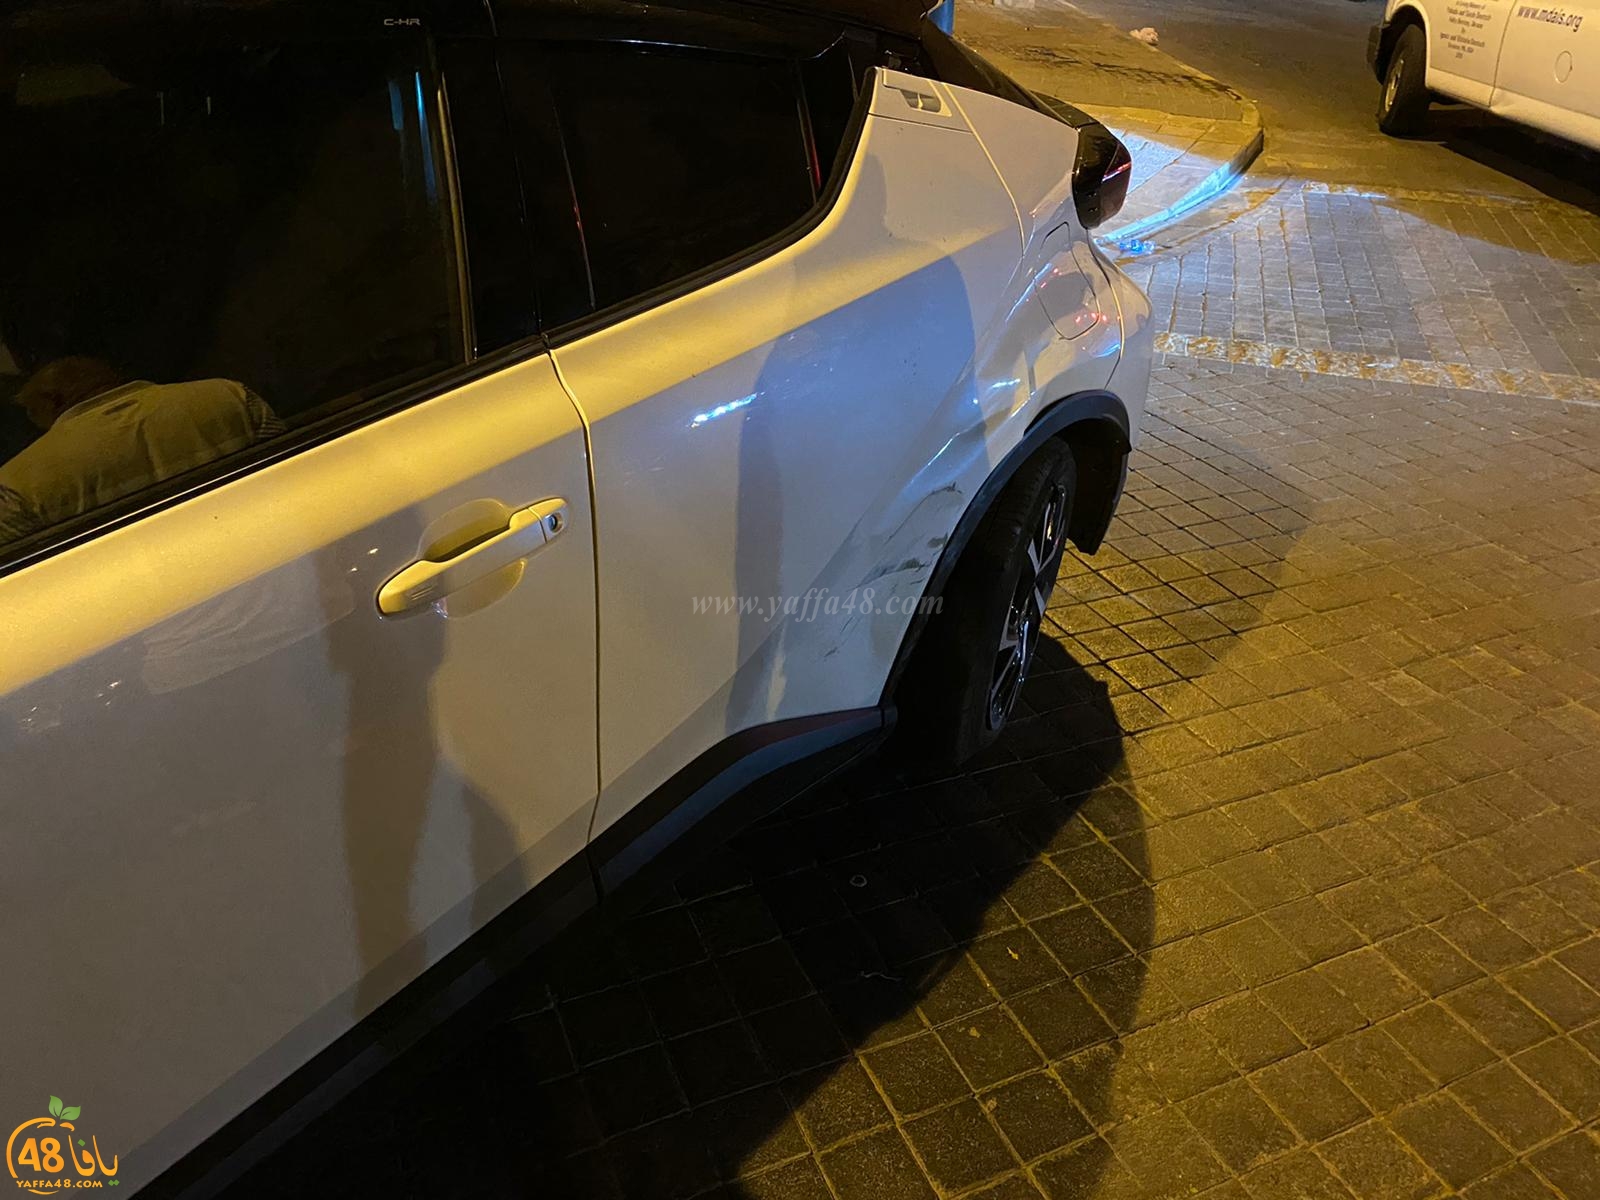  منتصف الليلة - اصابة طفيفة بحادث طرق بين مركبتين في يافا 